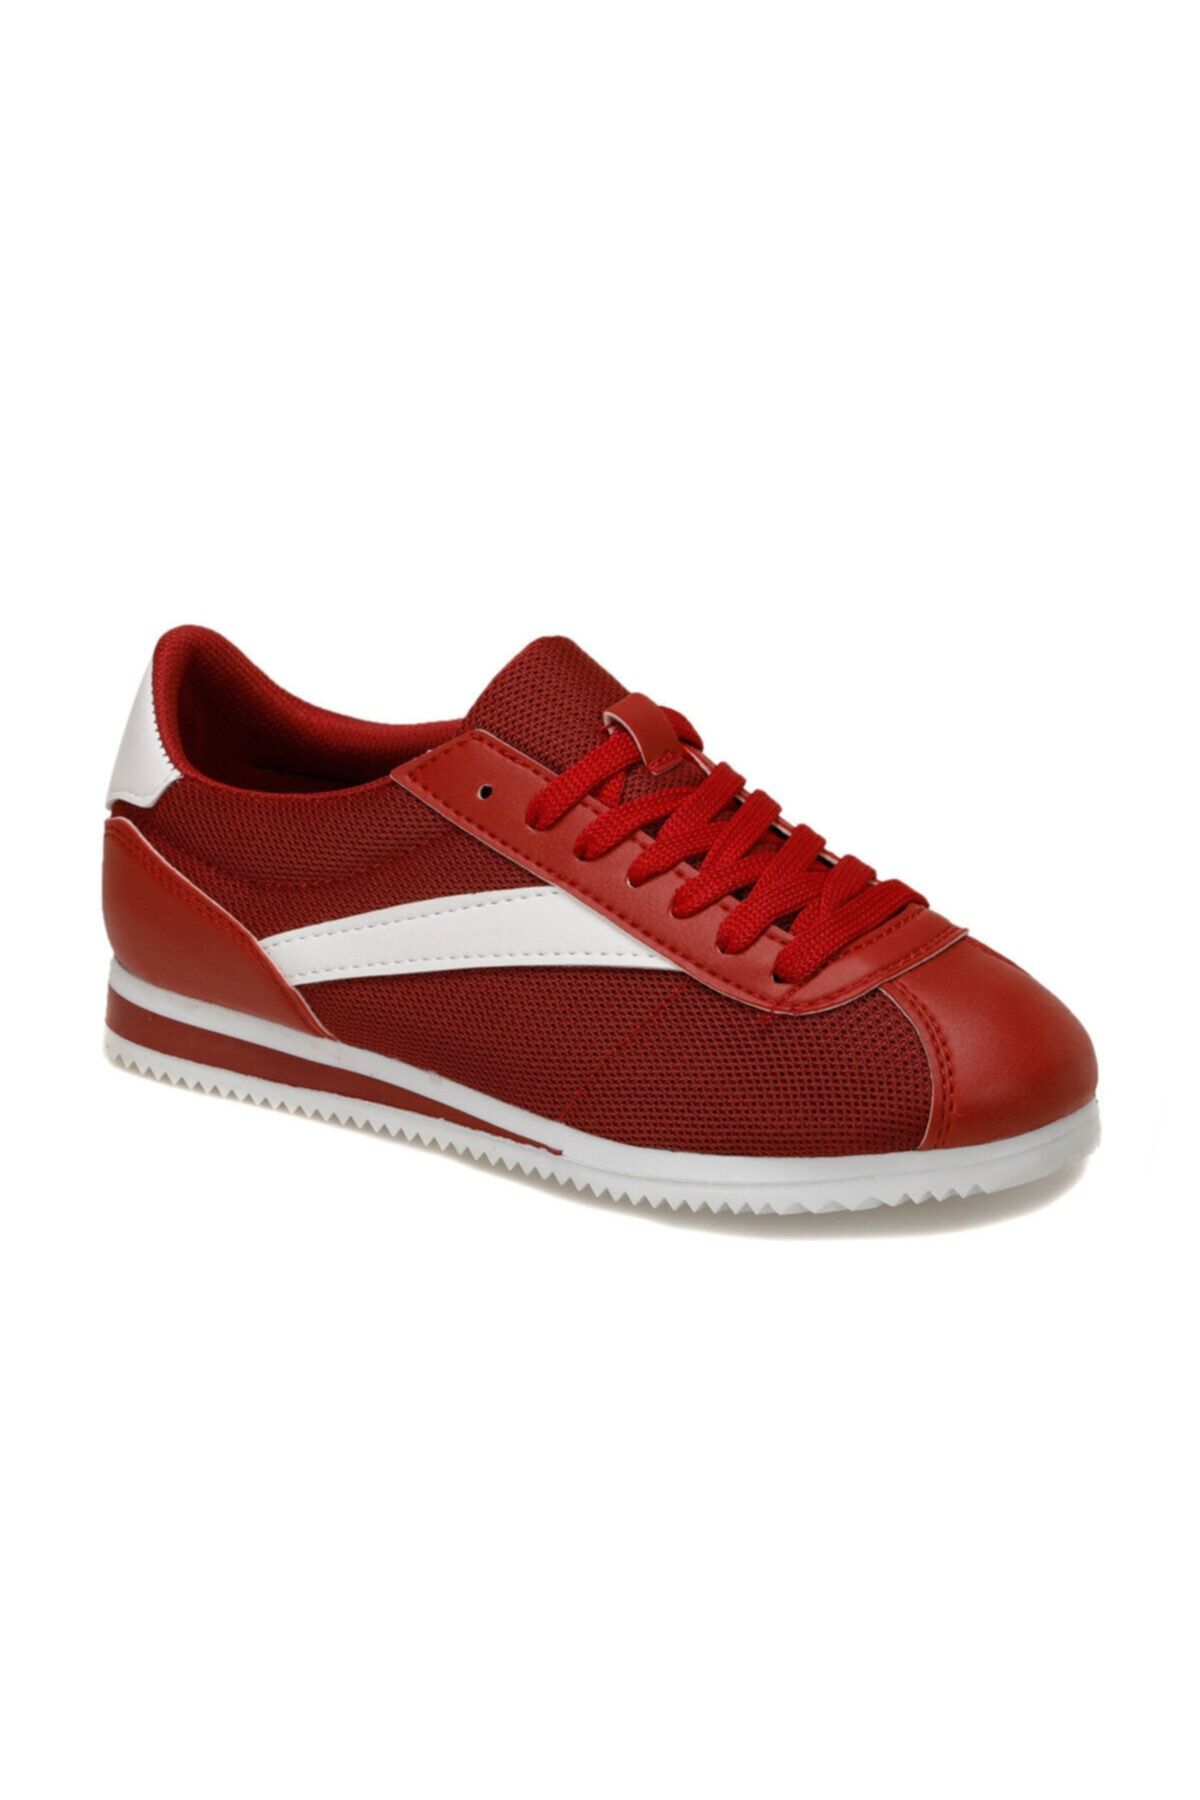 Torex ZEUS MESH W Kırmızı Kadın Sneaker Ayakkabı 100318042